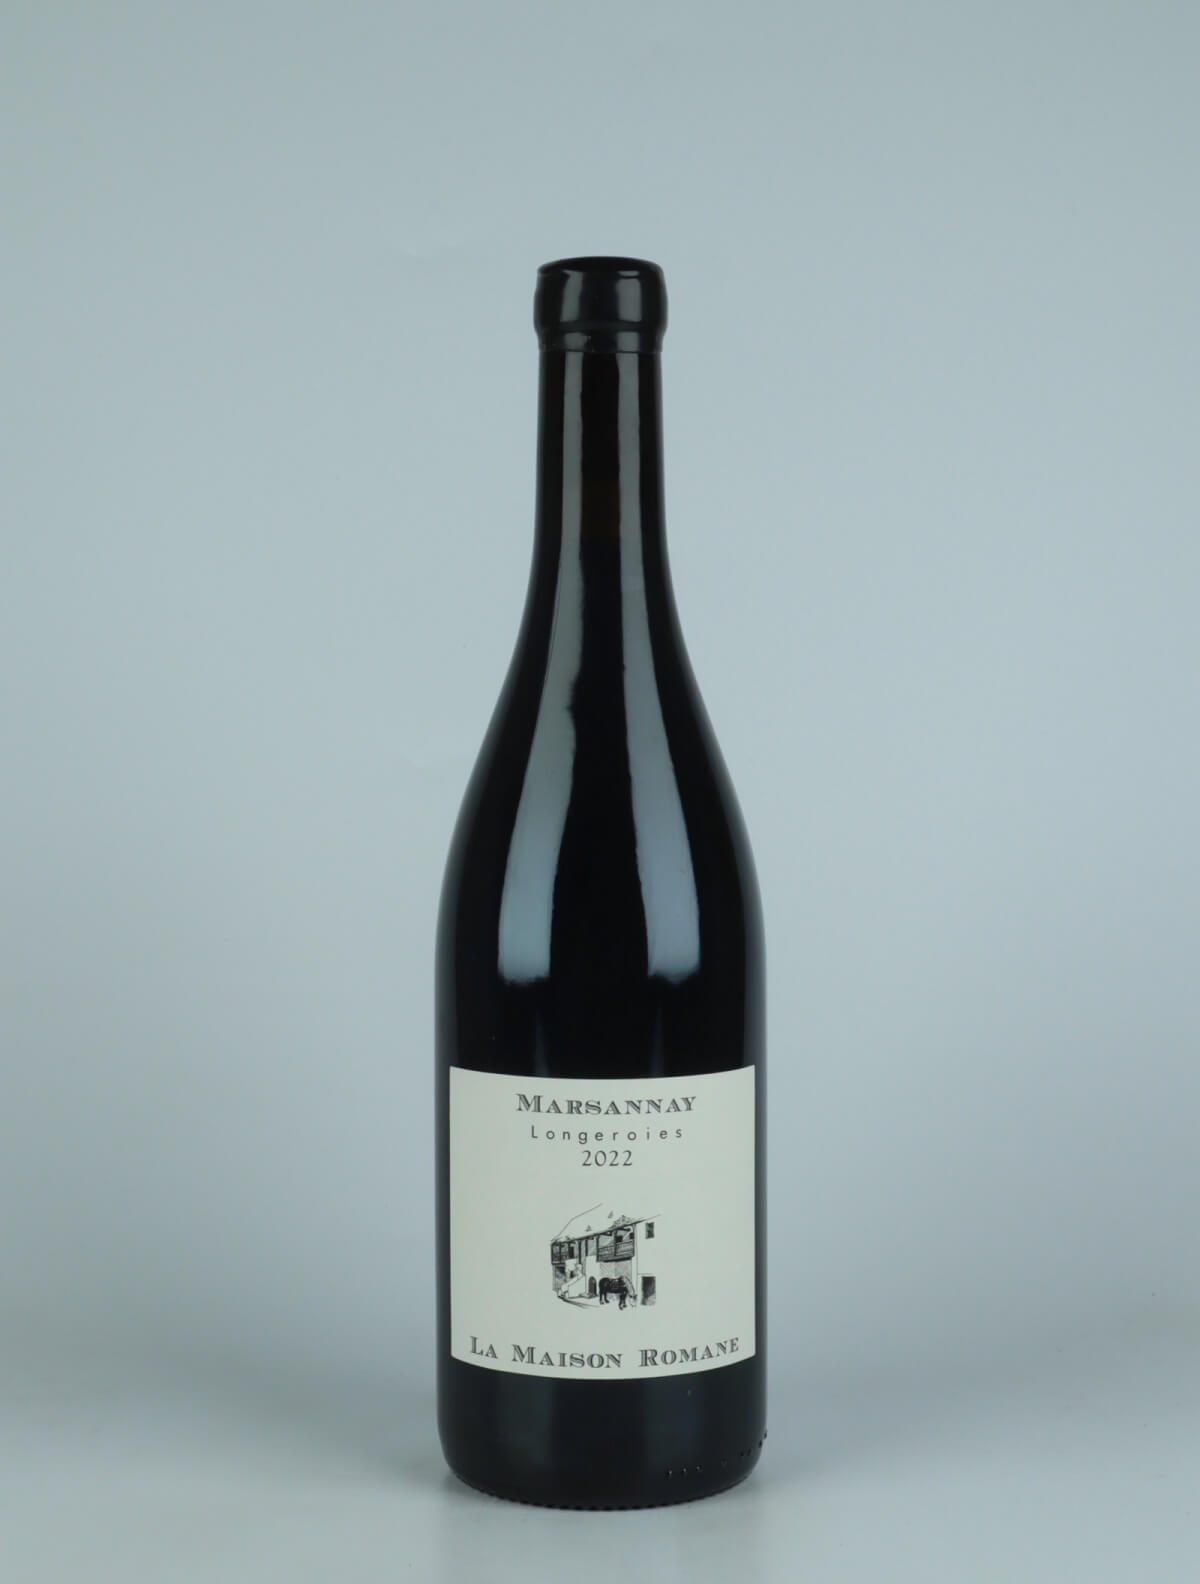 En flaske 2022 Marsannay - Longeroies Rødvin fra La Maison Romane, Bourgogne i Frankrig